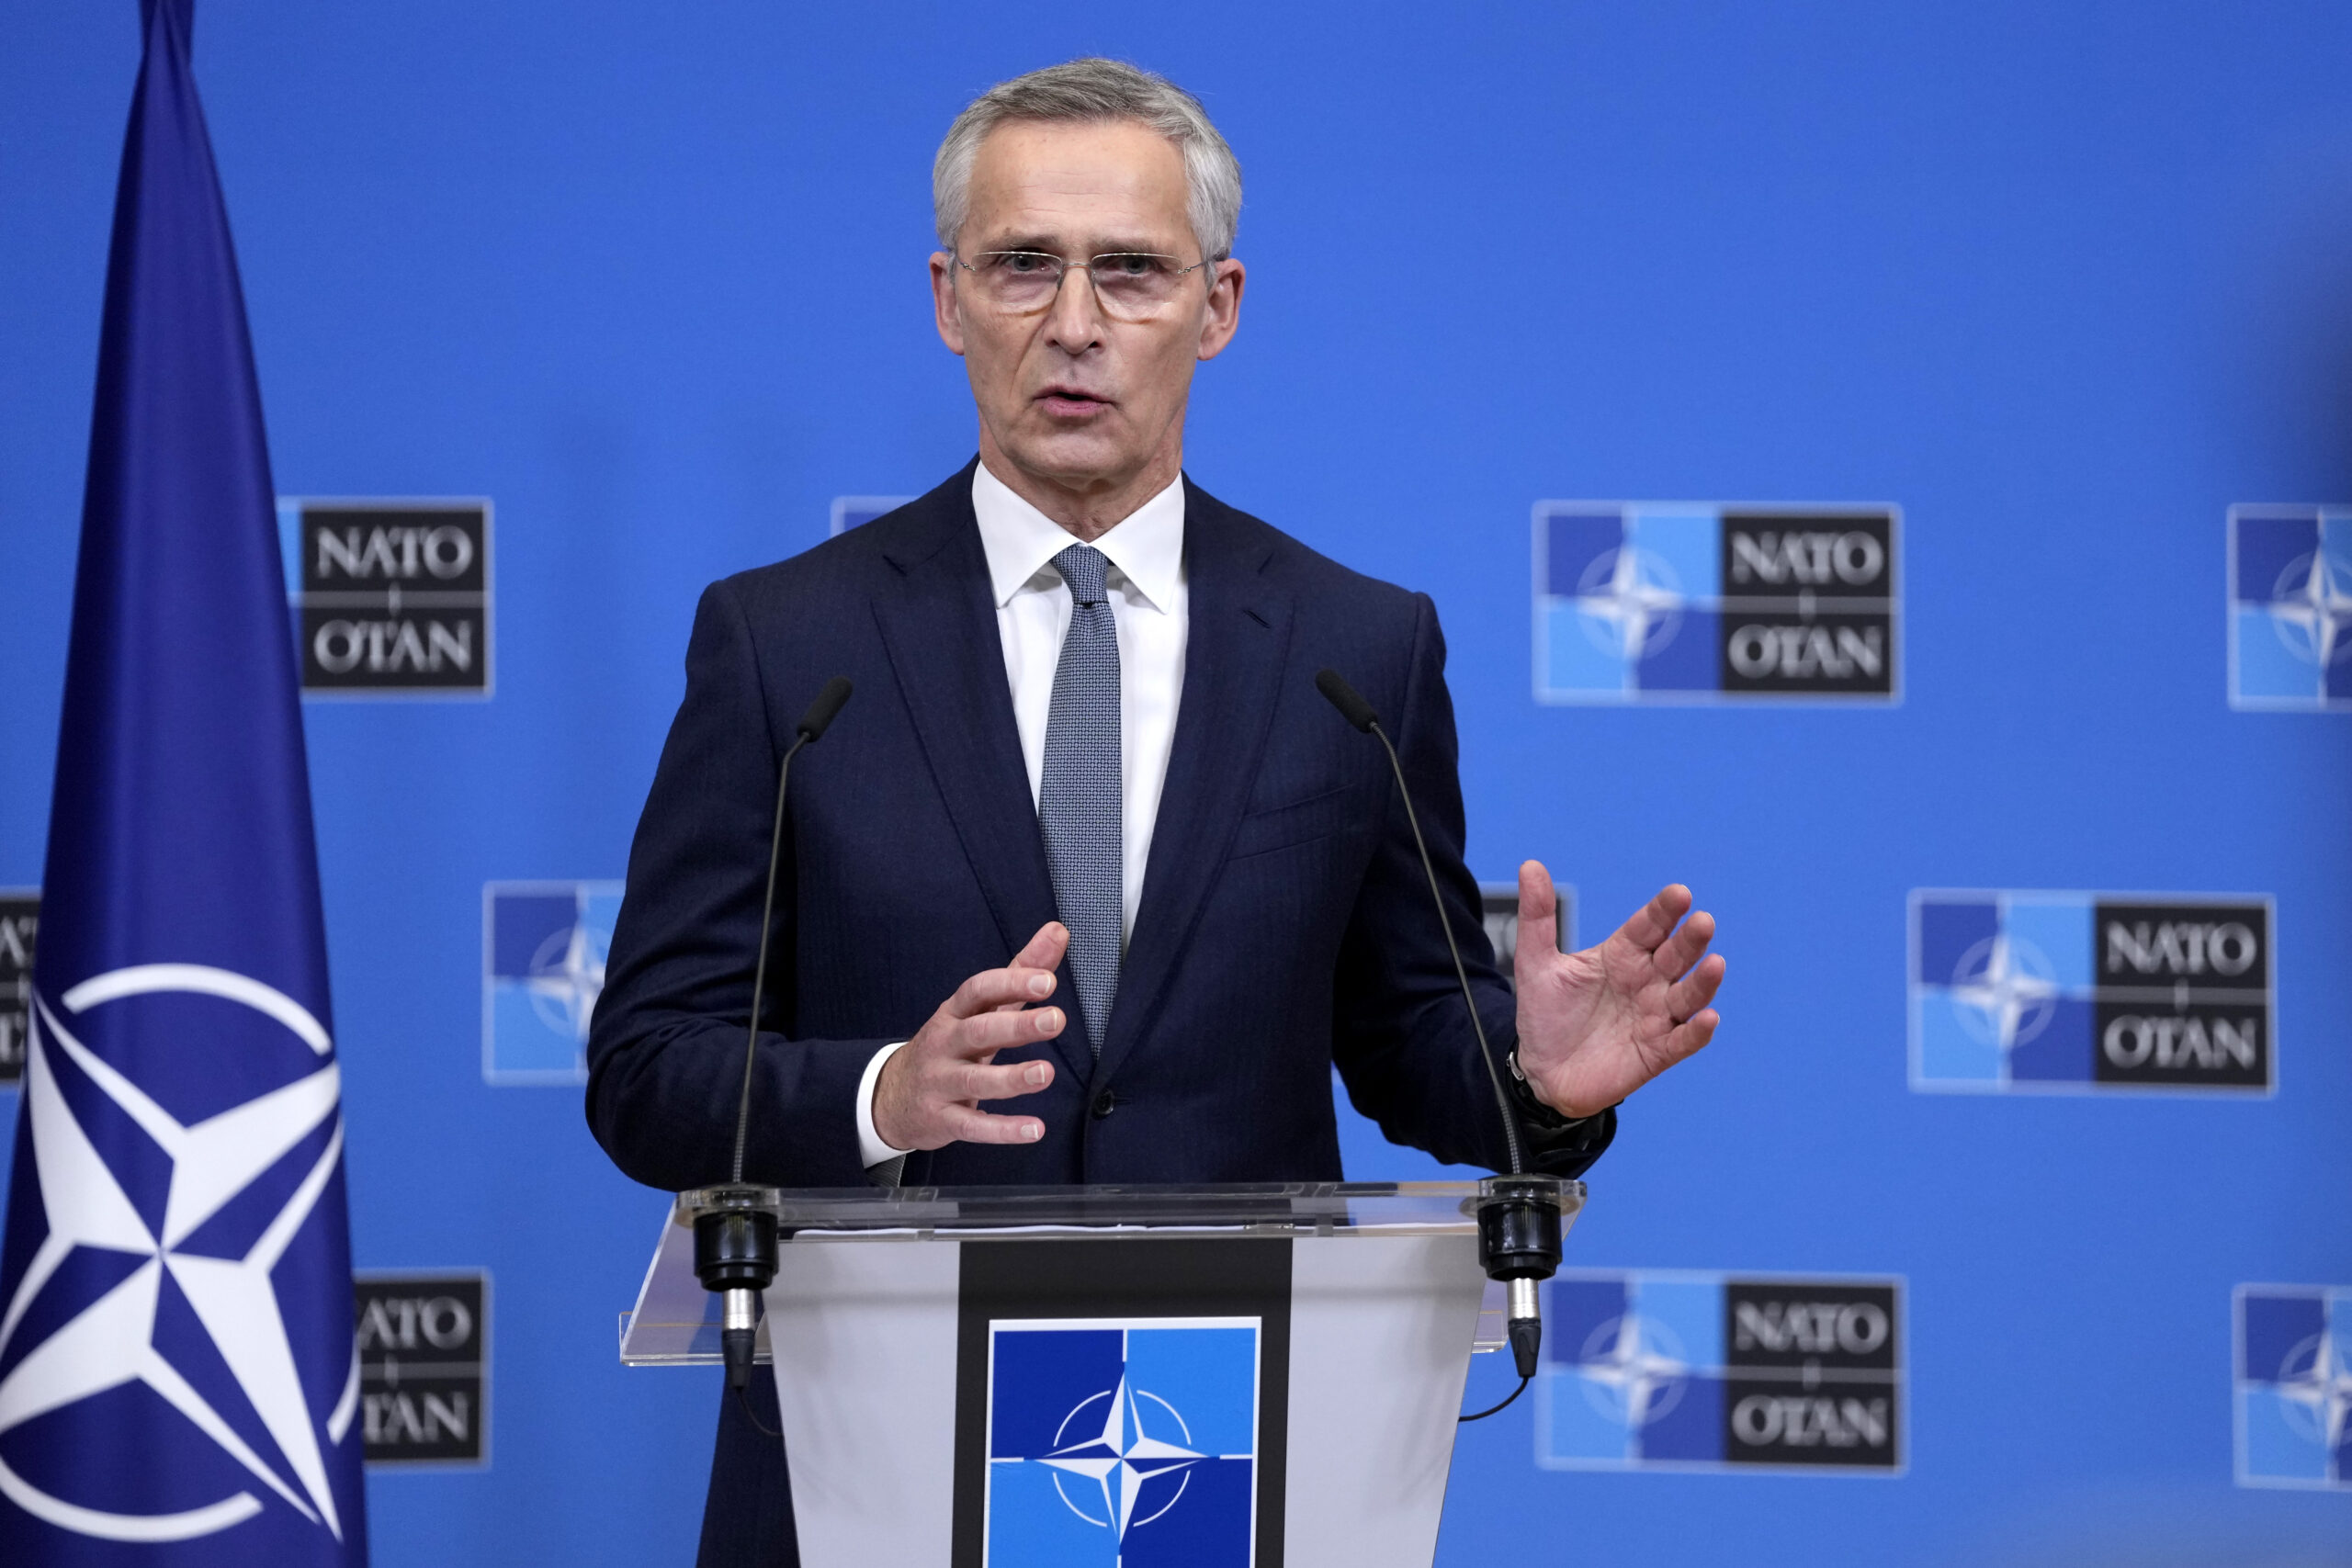 Alliance leader scrutinizes Trump’s NATO comments